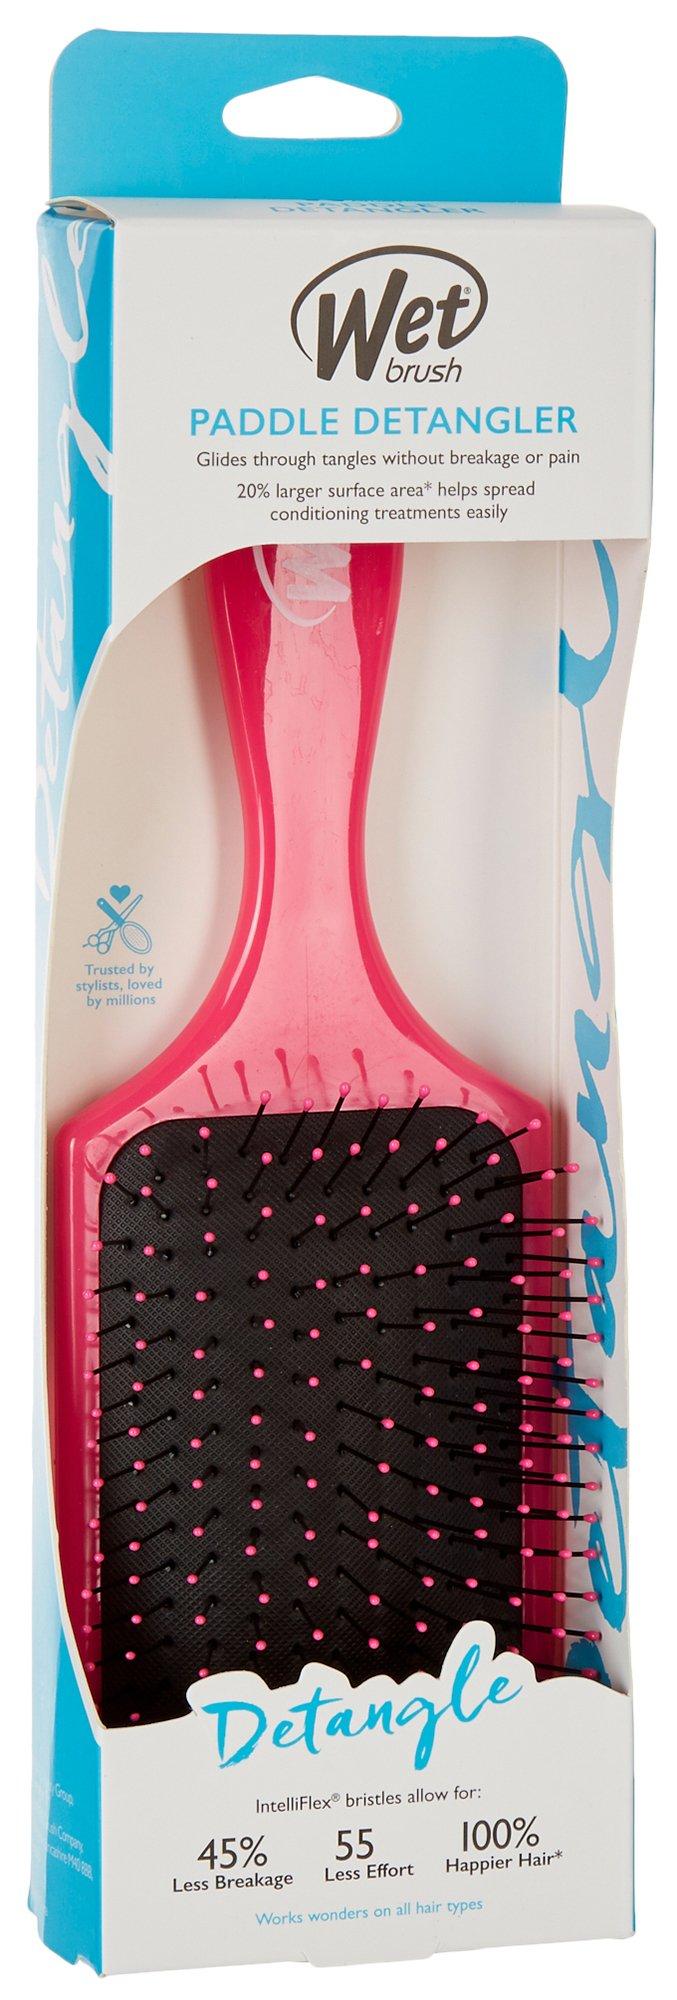 Paddle Detangler Hair Brush